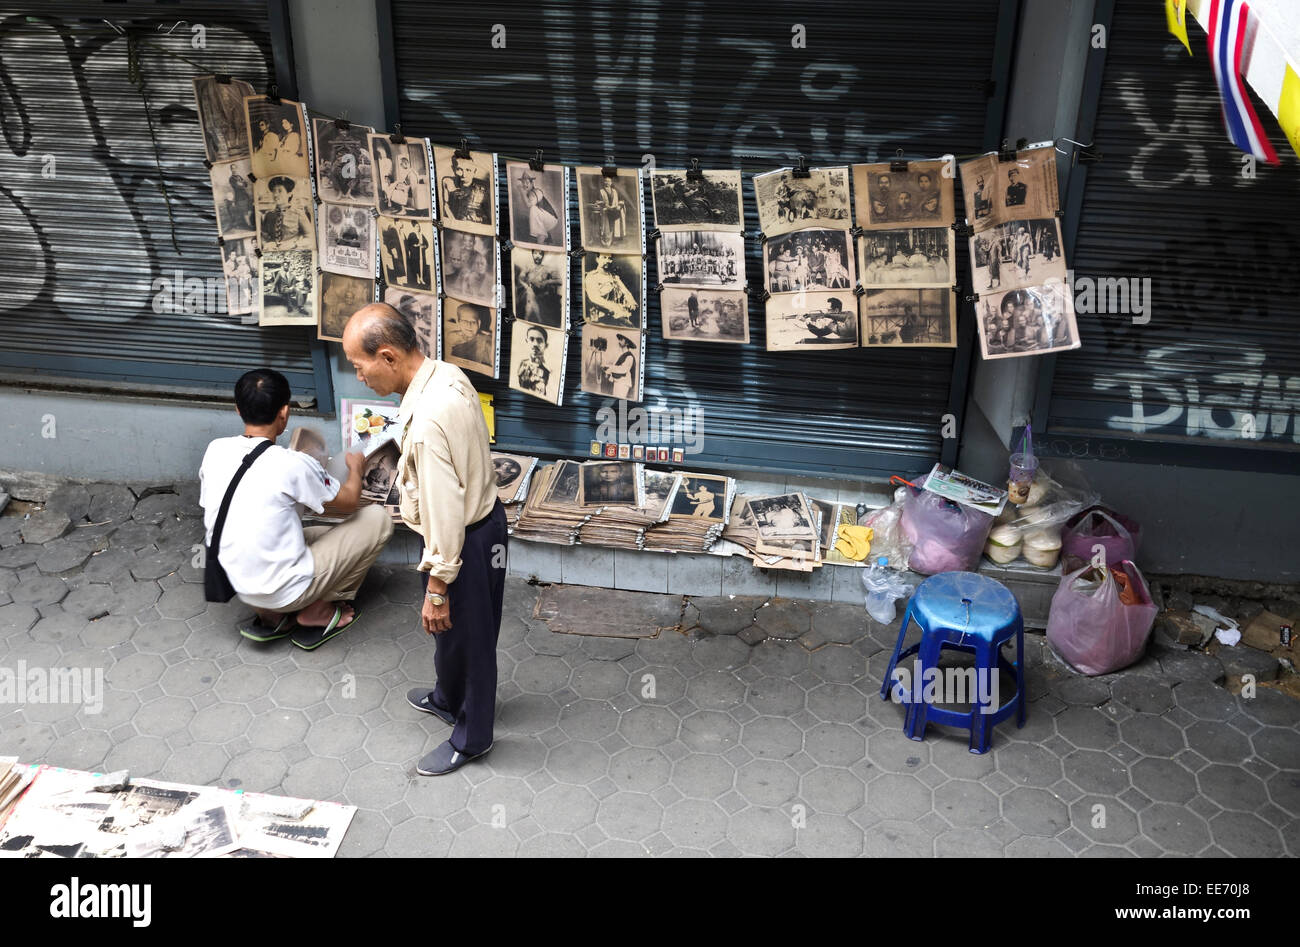 Asian street venditore a vendere foto storiche del famoso popolo Thai, Bangkok, Thailandia, sud-est asiatico. Foto Stock